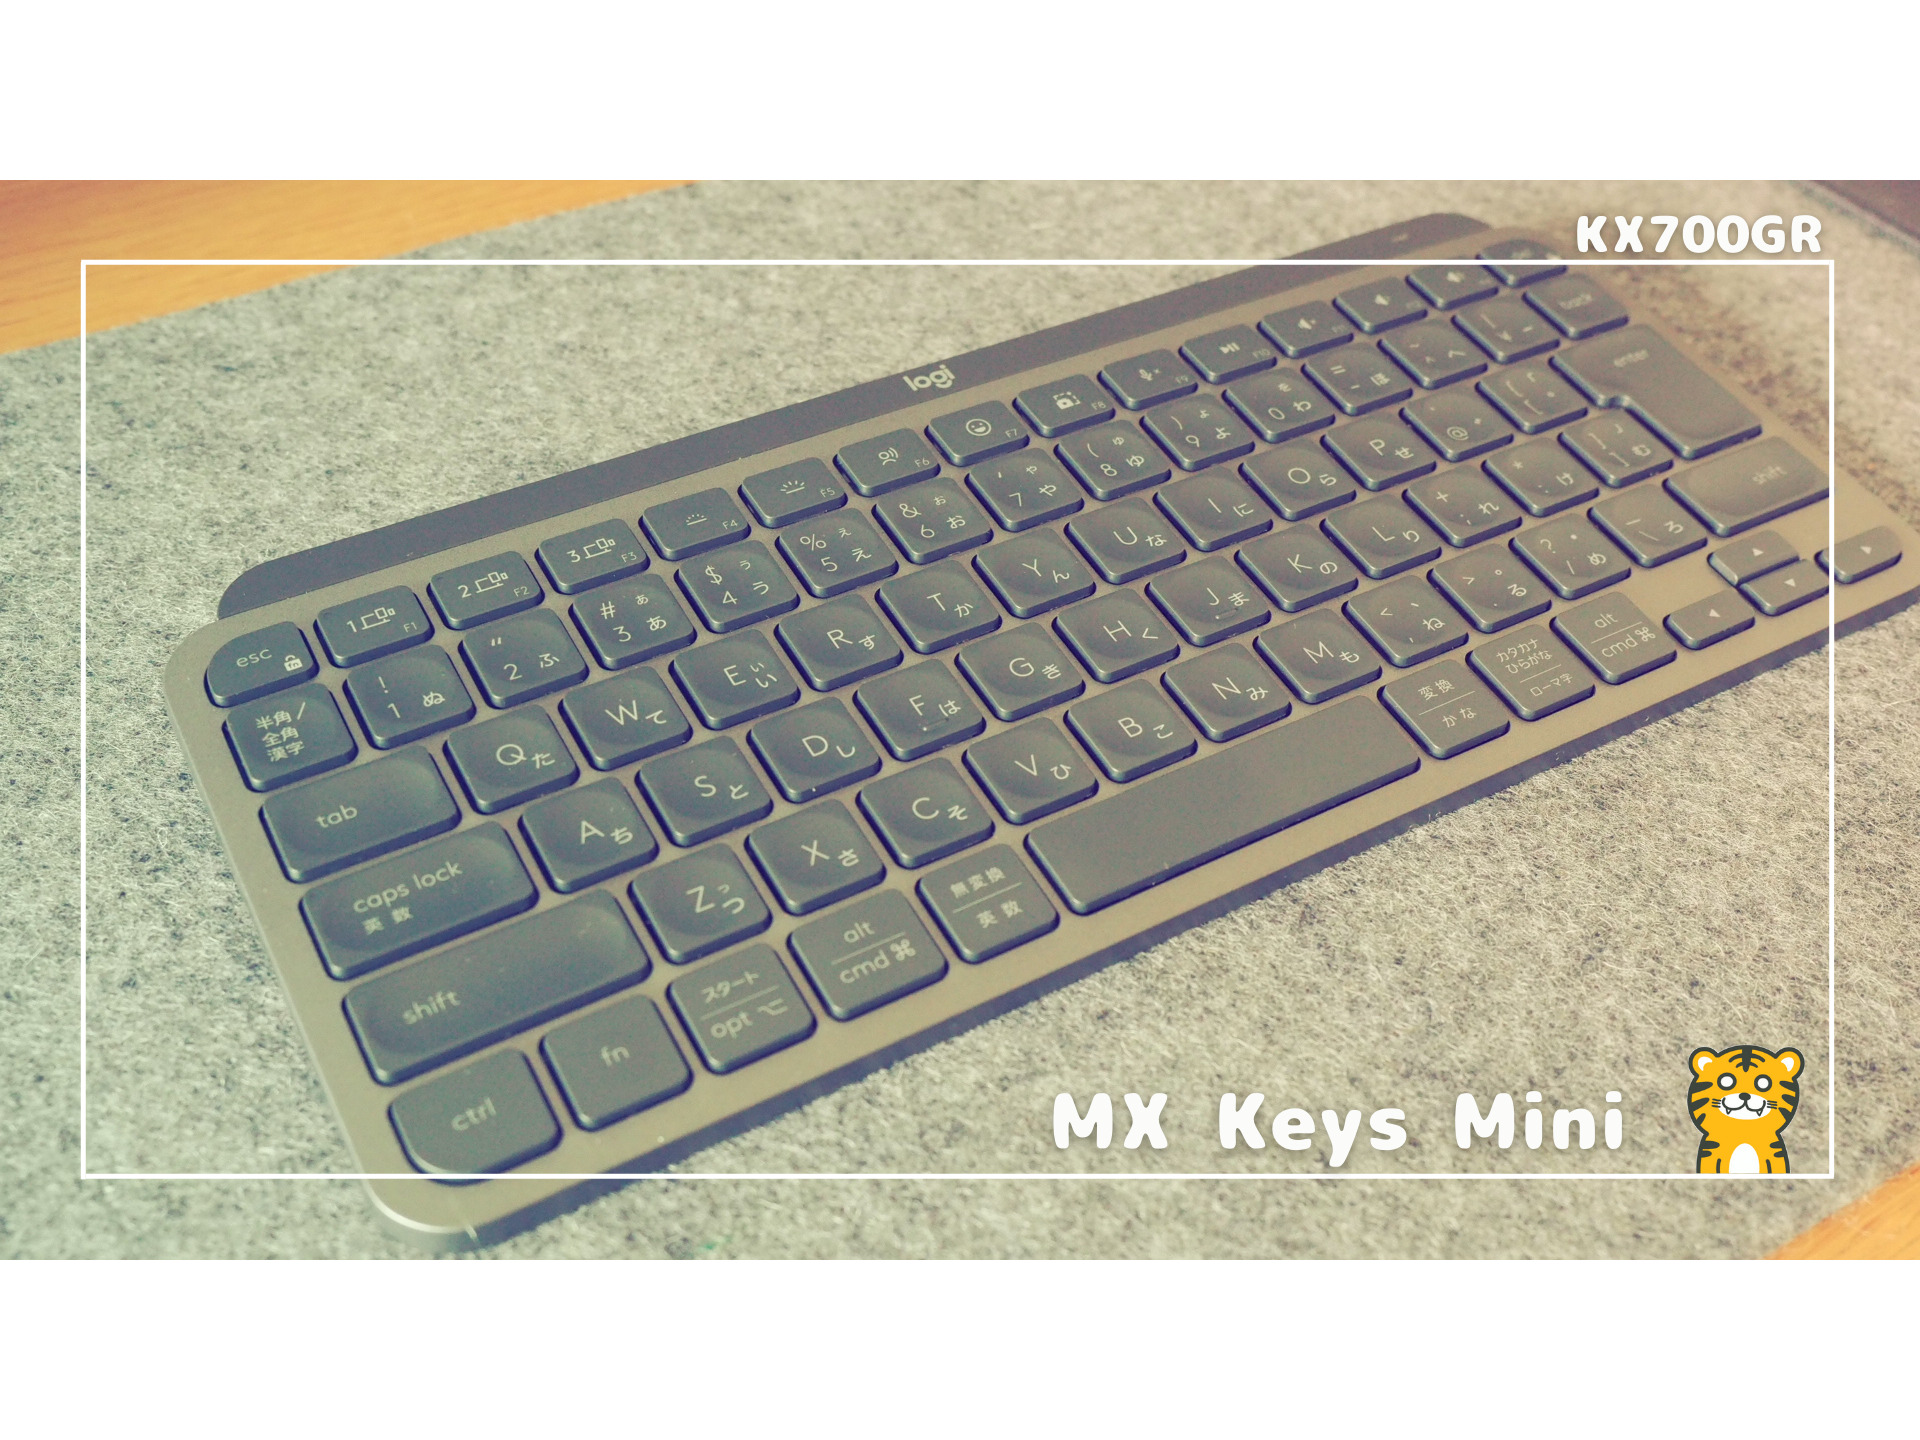 ロジクール】MX Kes Mini 700GR テレワーク特化なコンパクトキーボード